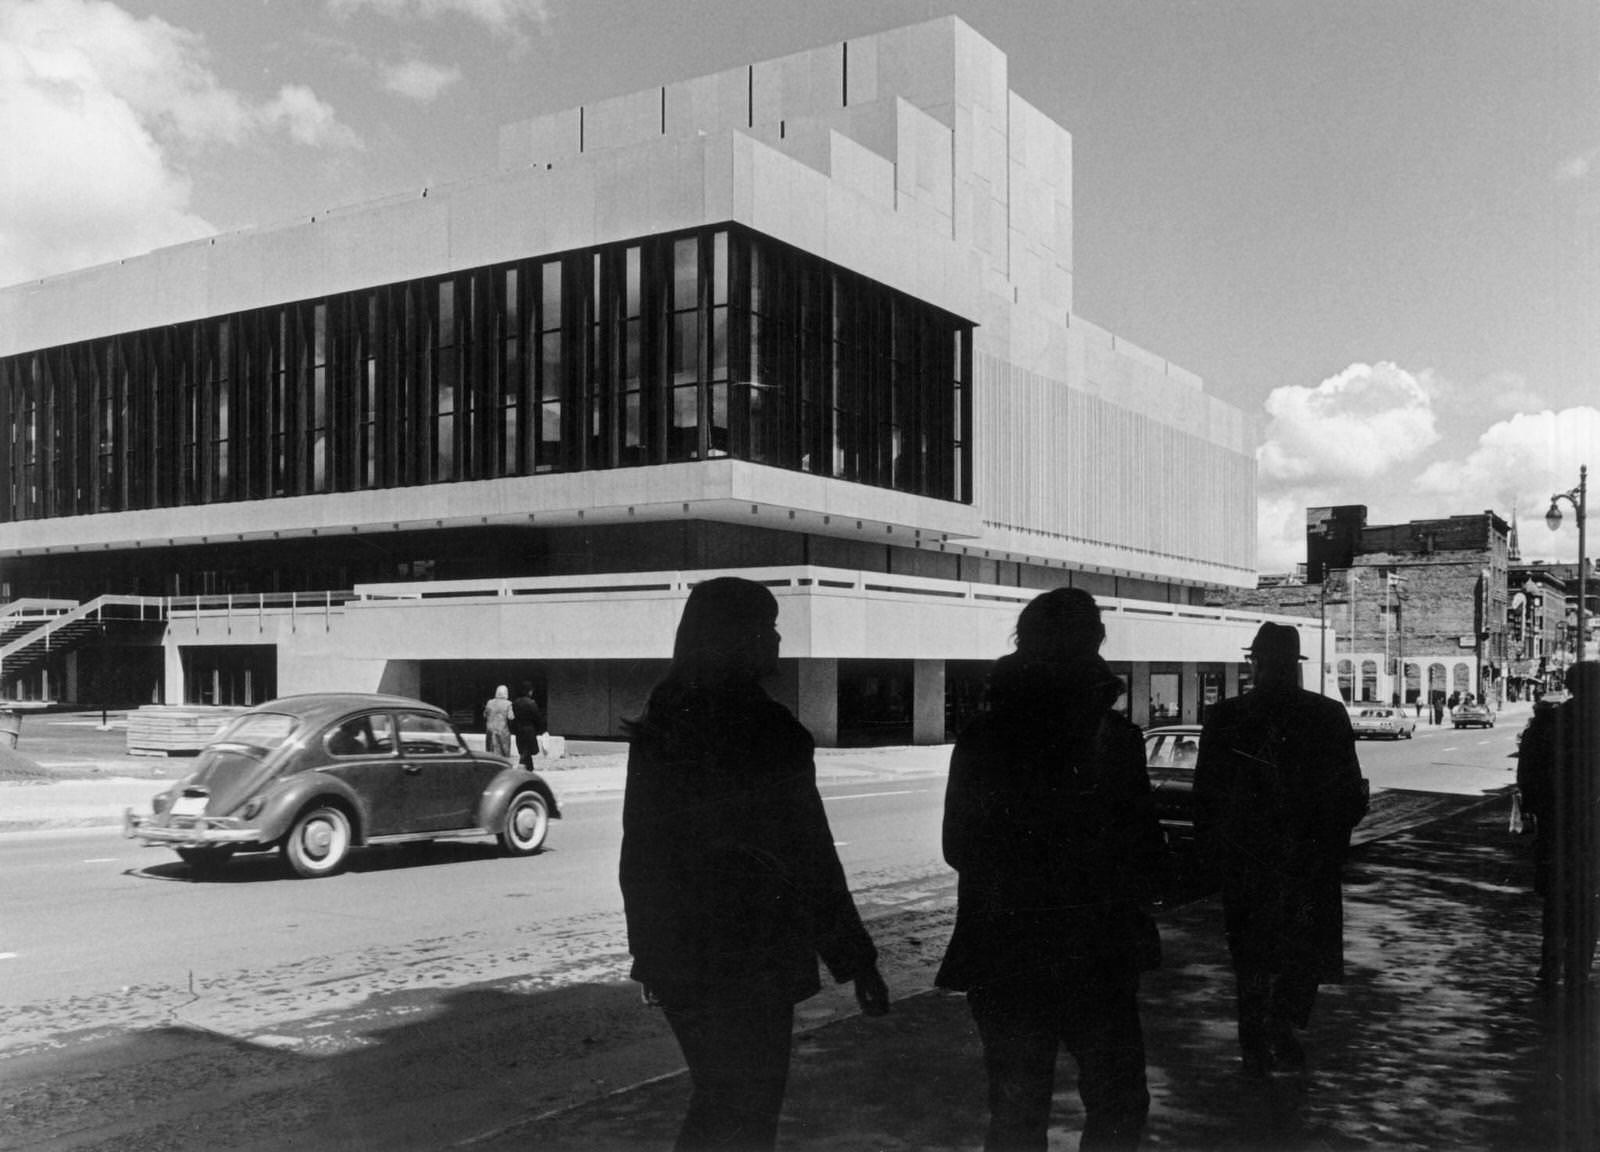 City theatre, Montreal, 1960s